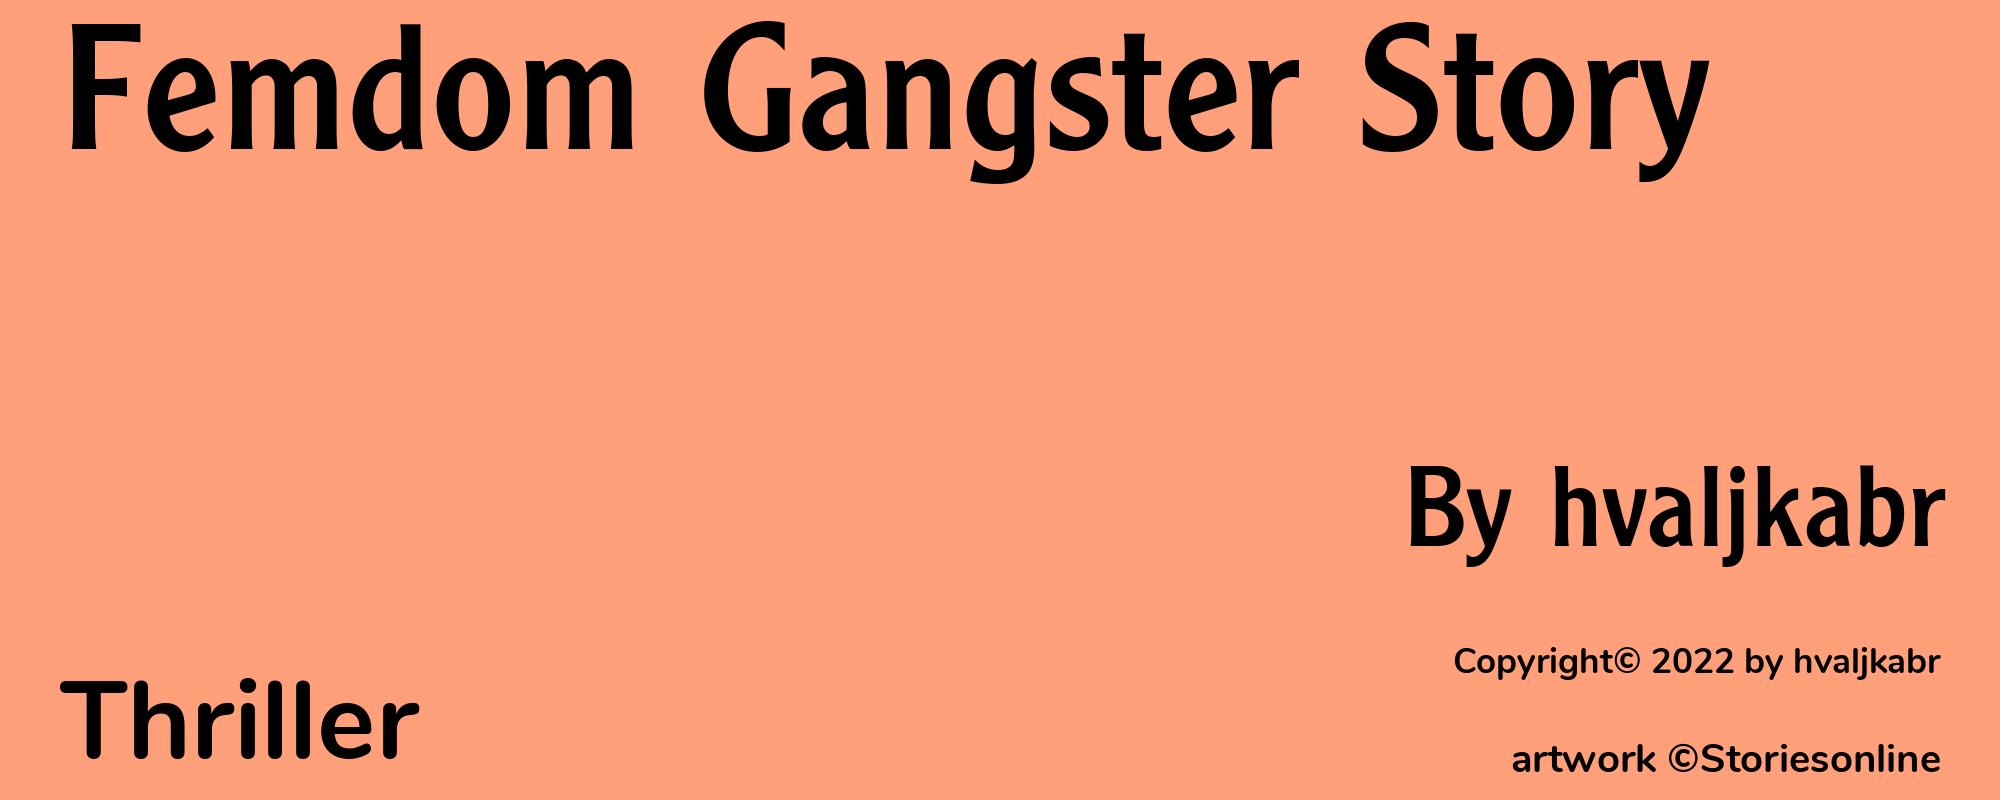 Femdom Gangster Story - Cover